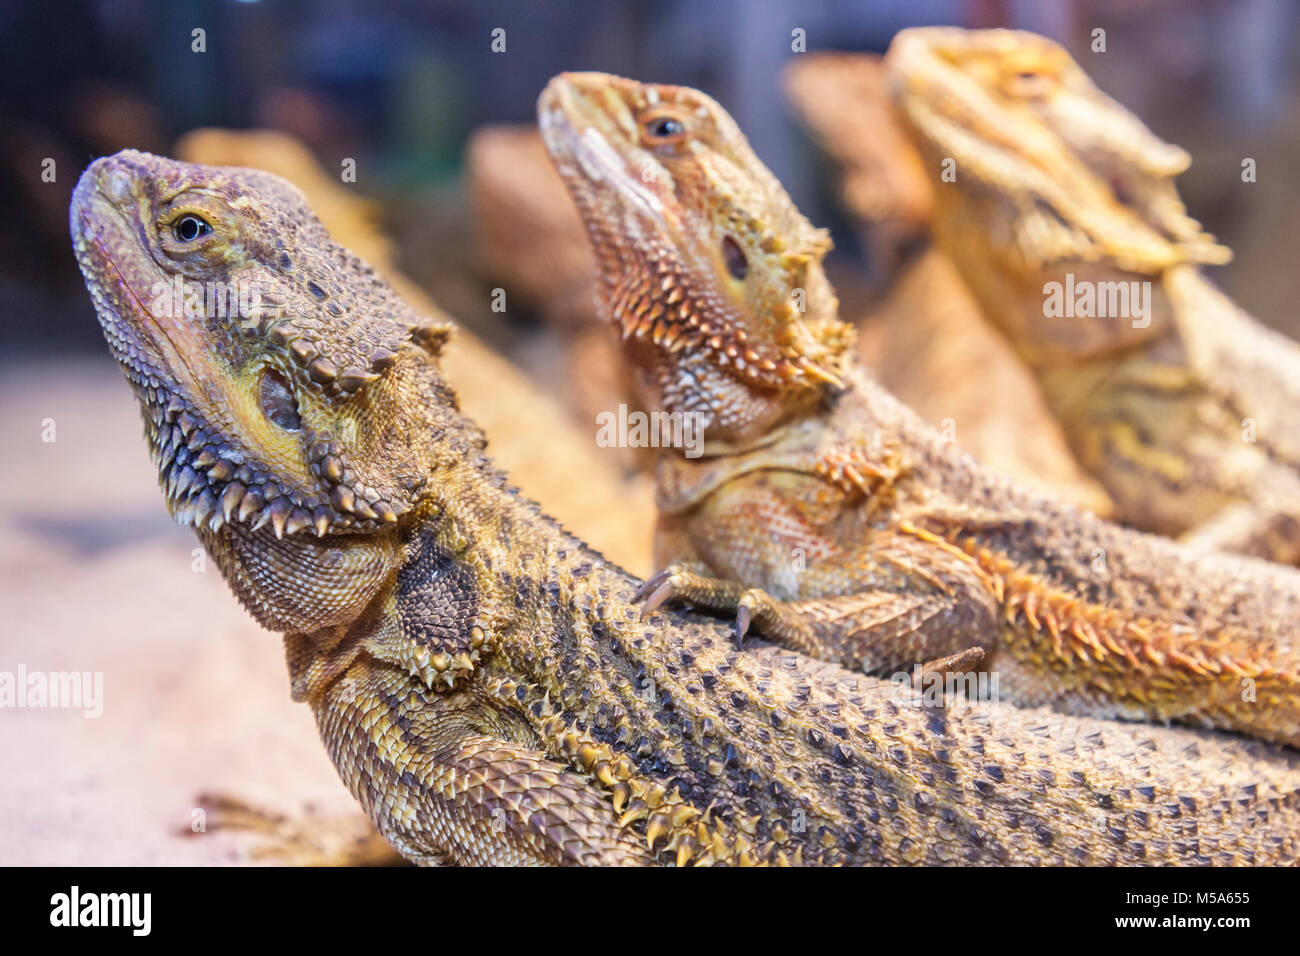 Miami Beach, Florida, drei bärtige Dracheneidechsen, Reptilien, Australier, exotische Haustiere, FL080328012 Stockfoto